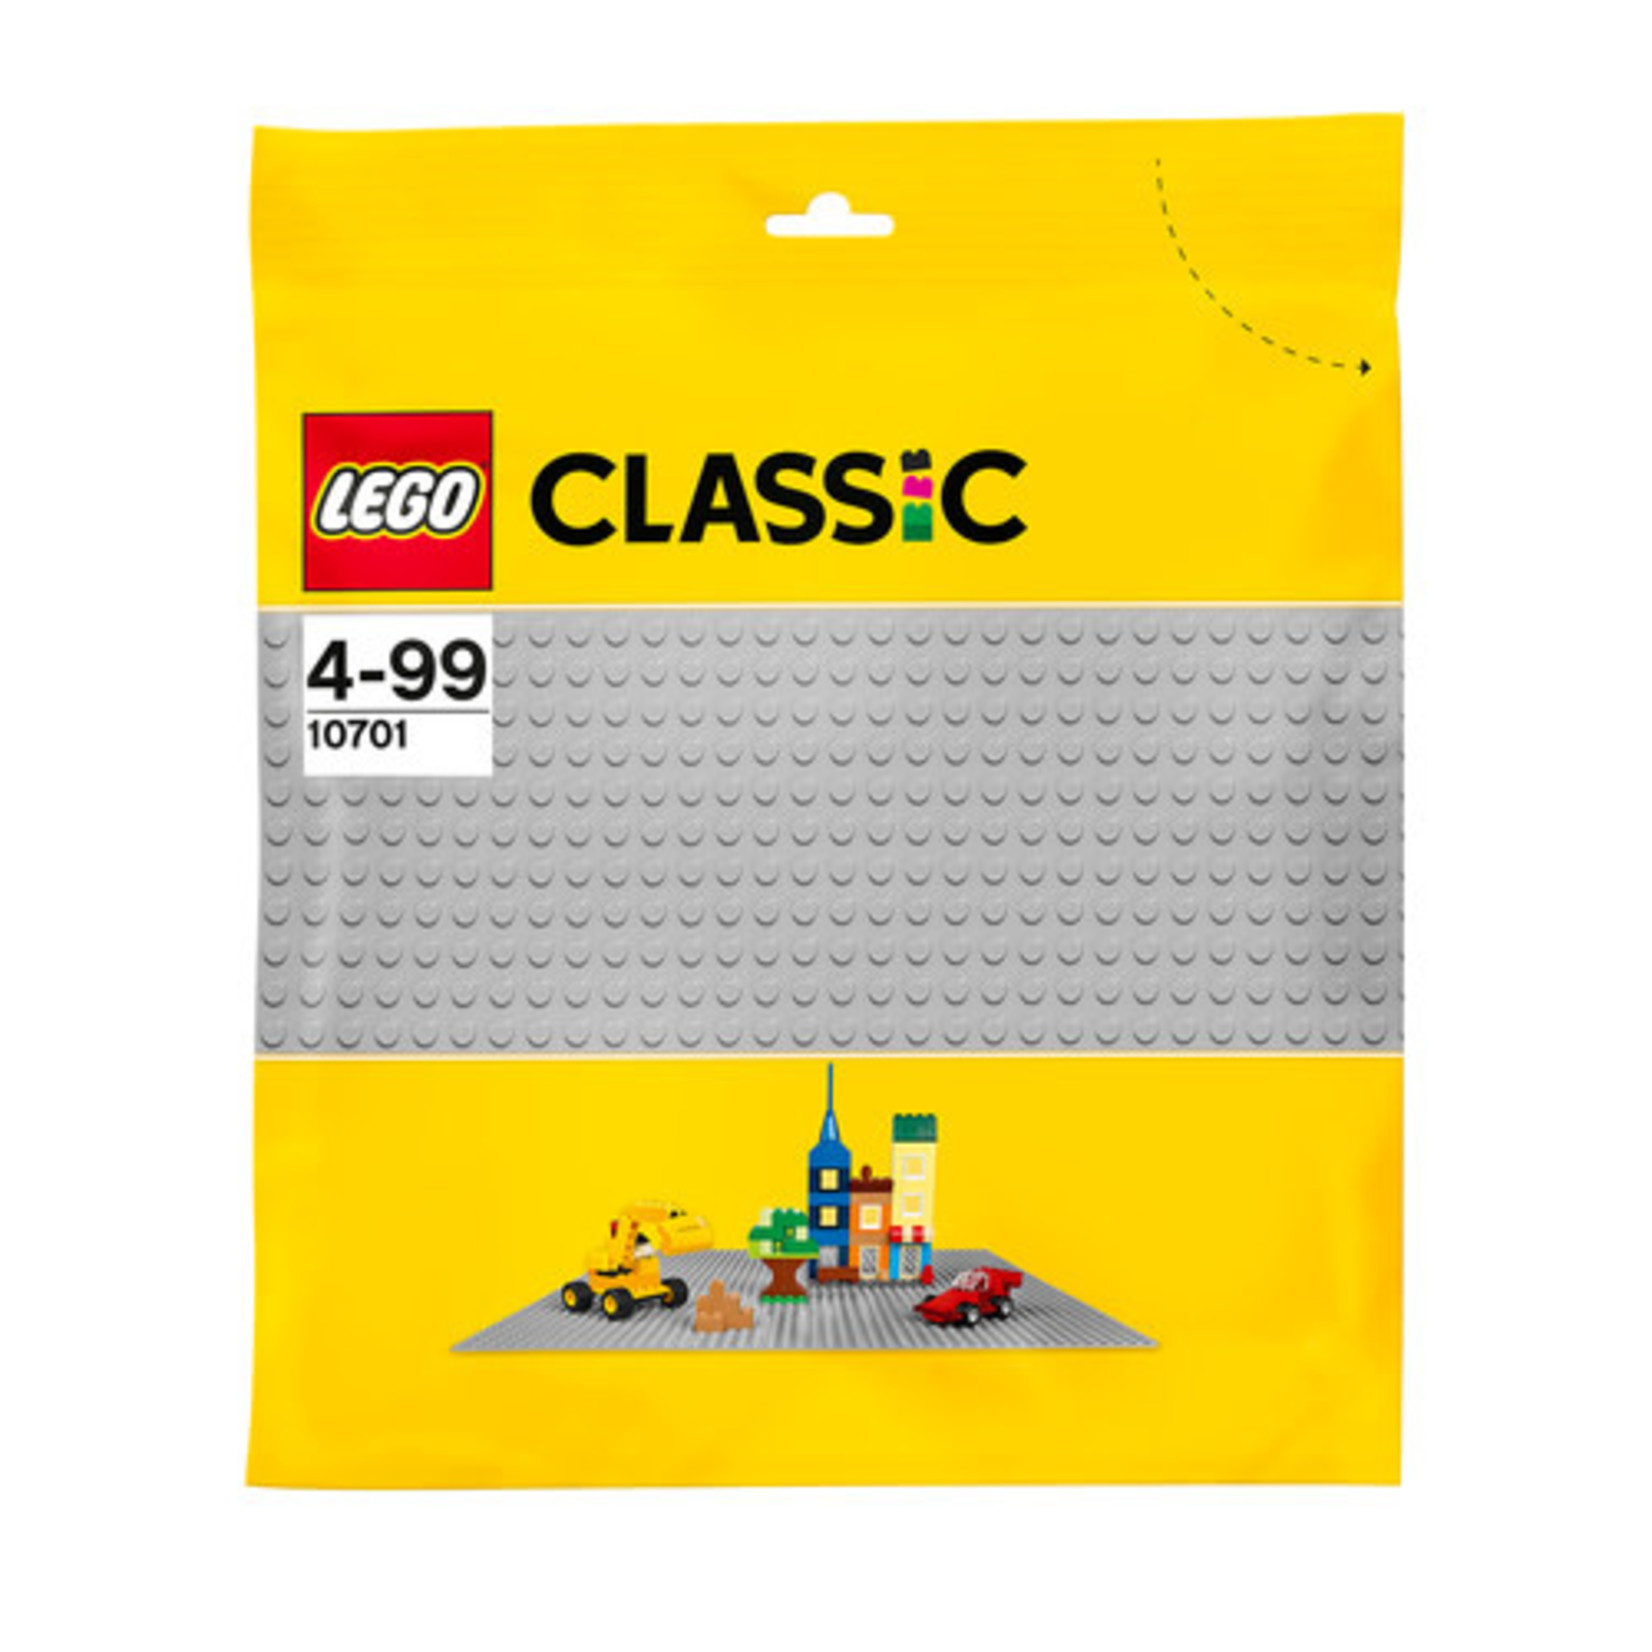 lade voorspelling nadering LEGO Classic Grijze bouwplaat - MADEinBILLUND